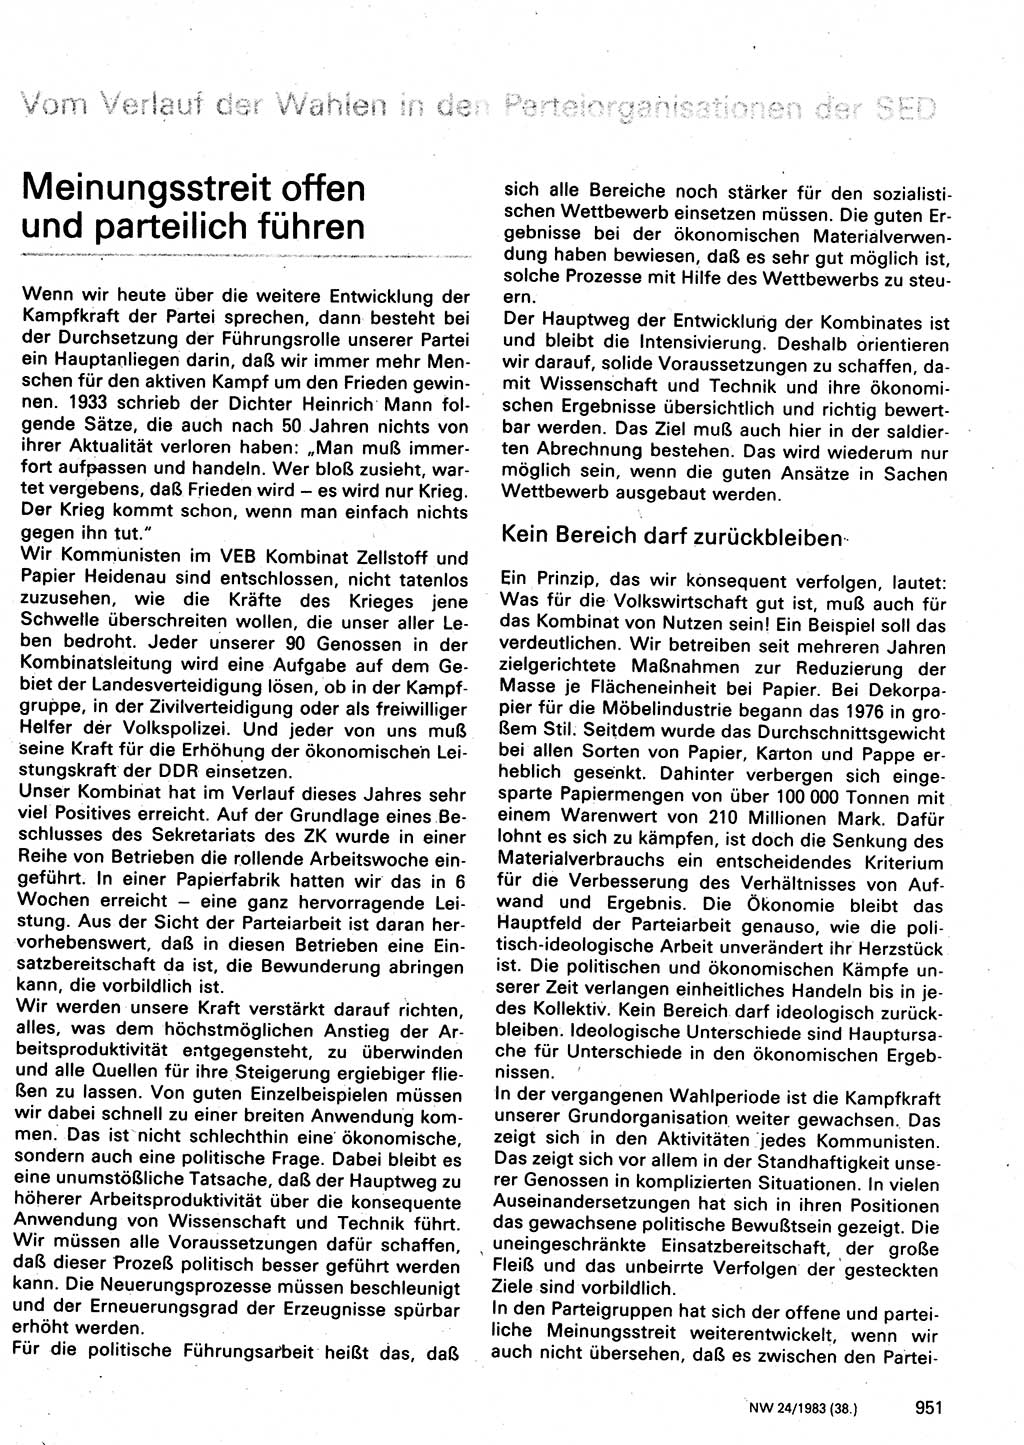 Neuer Weg (NW), Organ des Zentralkomitees (ZK) der SED (Sozialistische Einheitspartei Deutschlands) für Fragen des Parteilebens, 38. Jahrgang [Deutsche Demokratische Republik (DDR)] 1983, Seite 951 (NW ZK SED DDR 1983, S. 951)